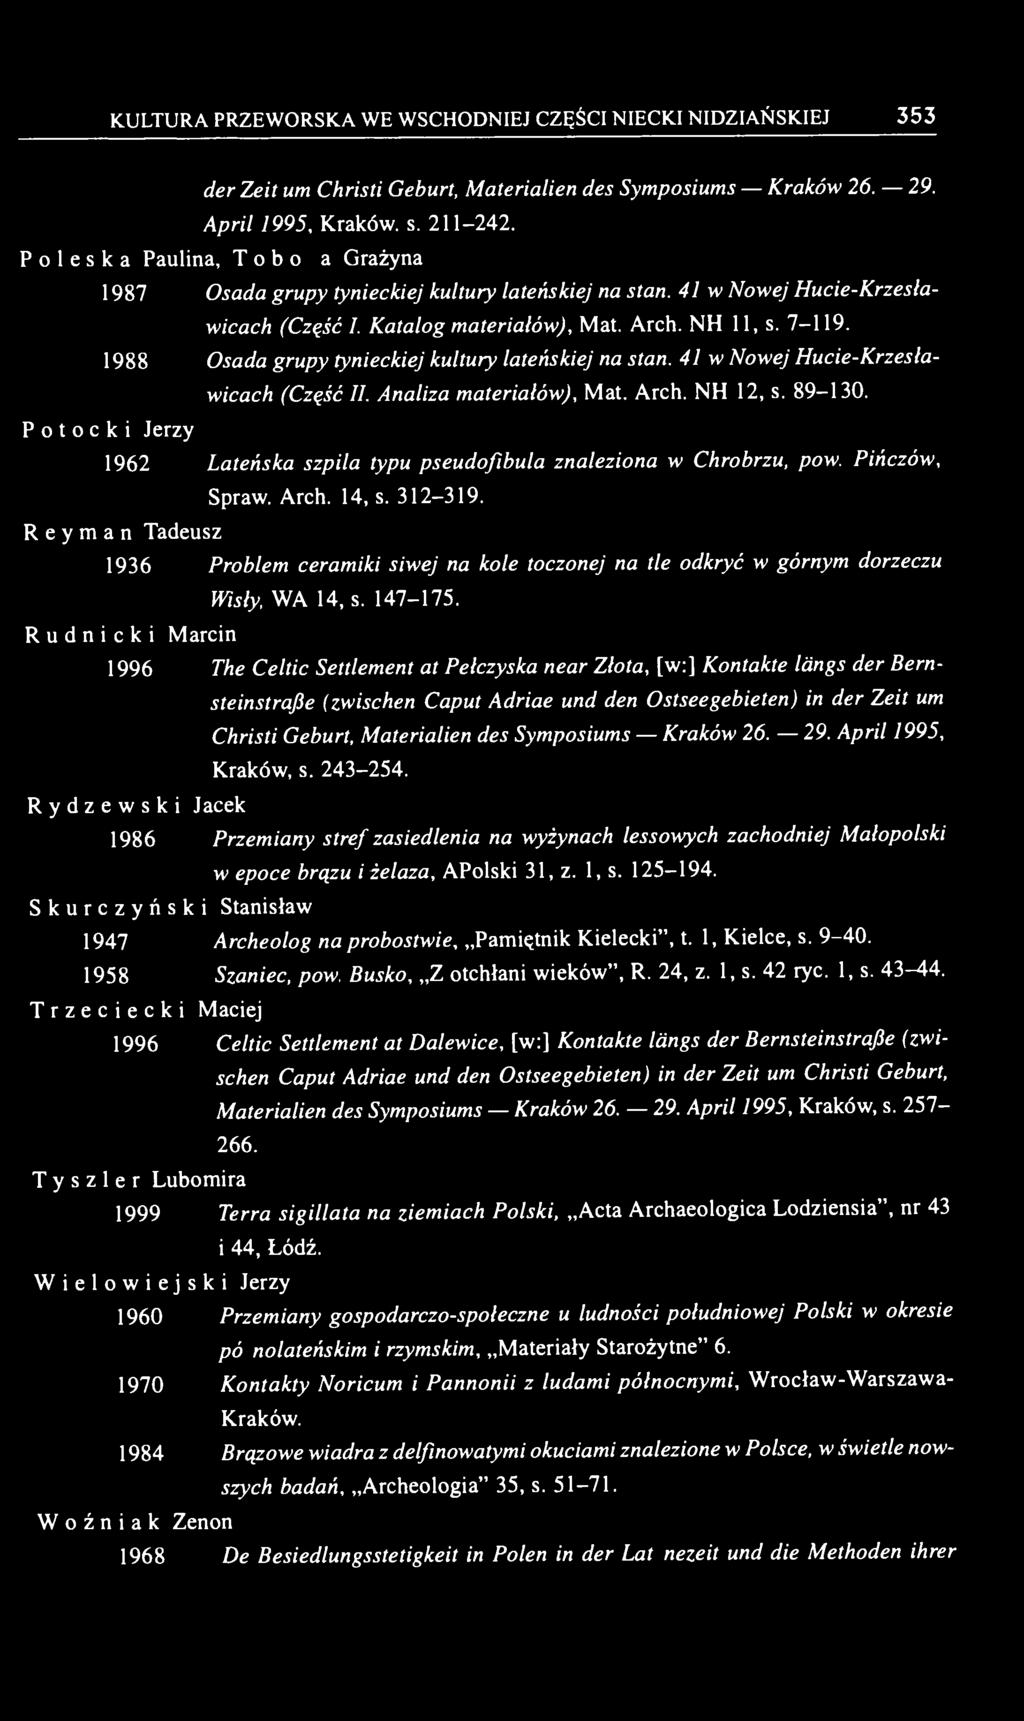 Jerzy 1988 Osada grupy tynieckiej kultury lateńskiej na stan. 41 w Nowej Hucie-Krzesławicach (Część II. Analiza materiałów), Mat. Arch. NH 12, s. 89-130.